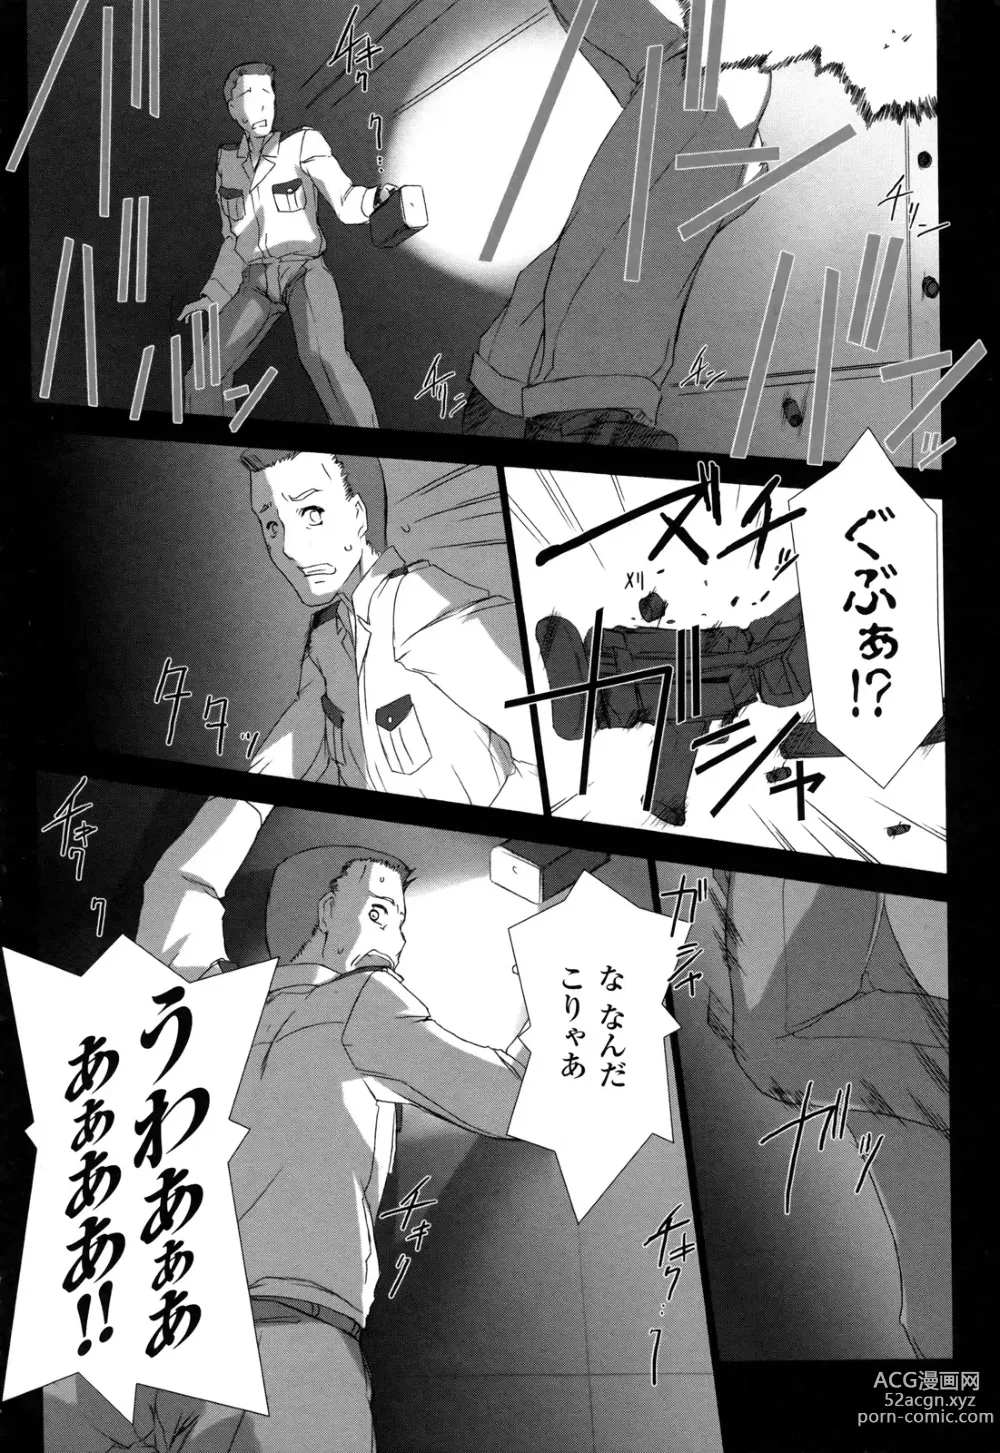 Page 181 of manga Ziggurat 2